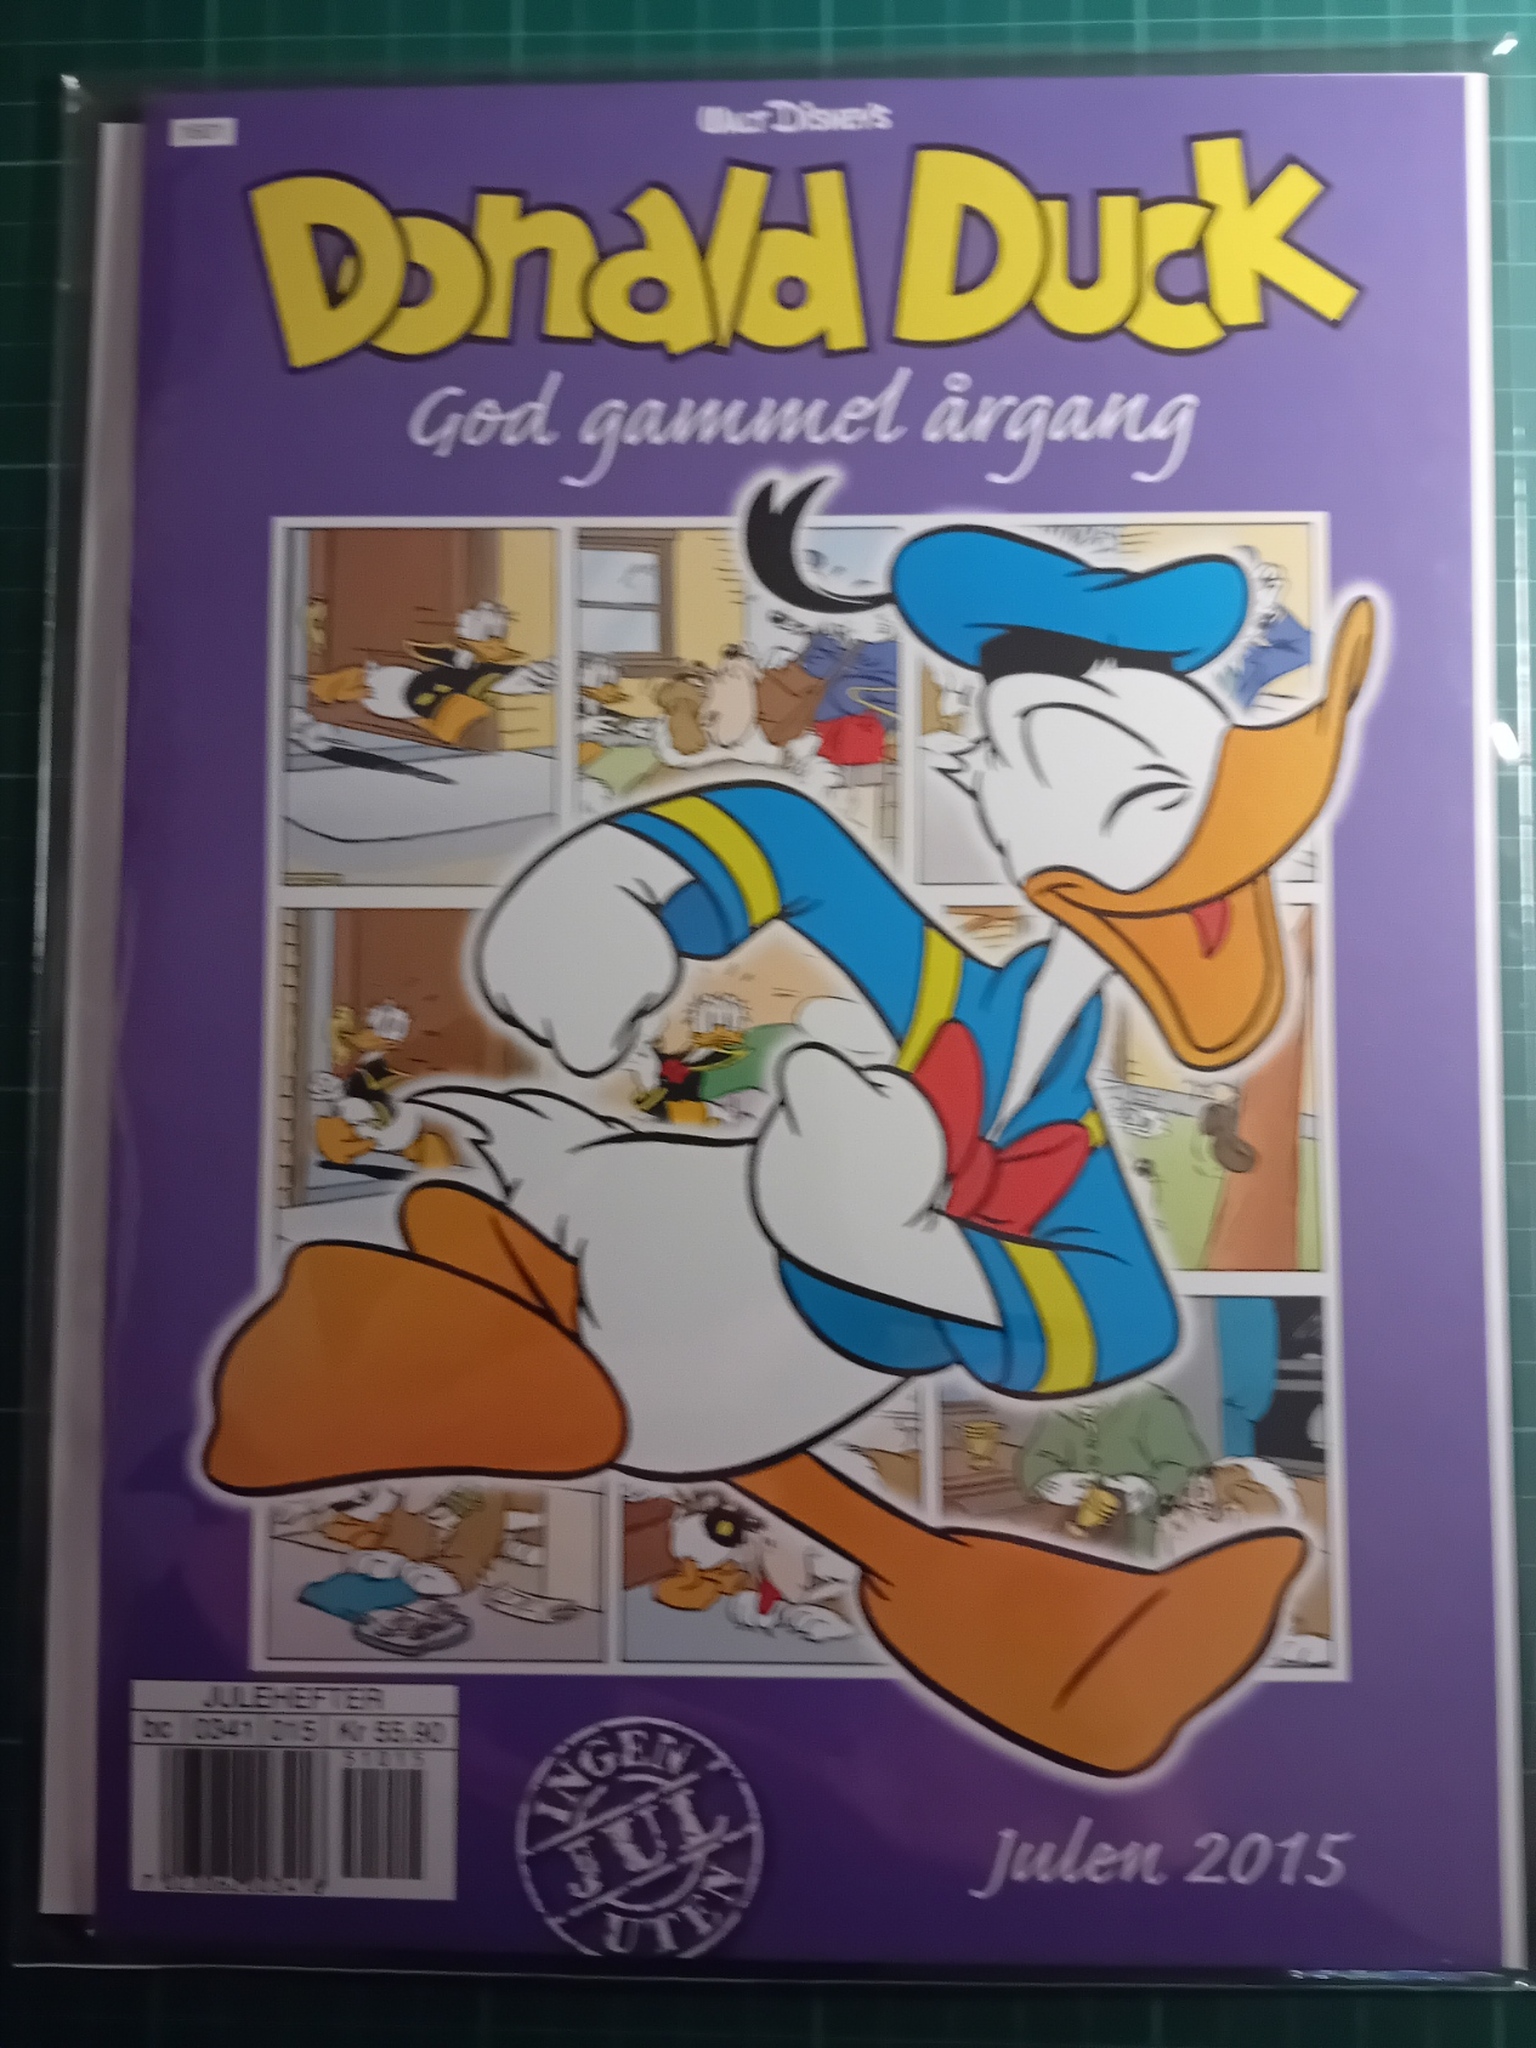 Donald Duck God gammel årgang 2015 m/plastlomme og bakark